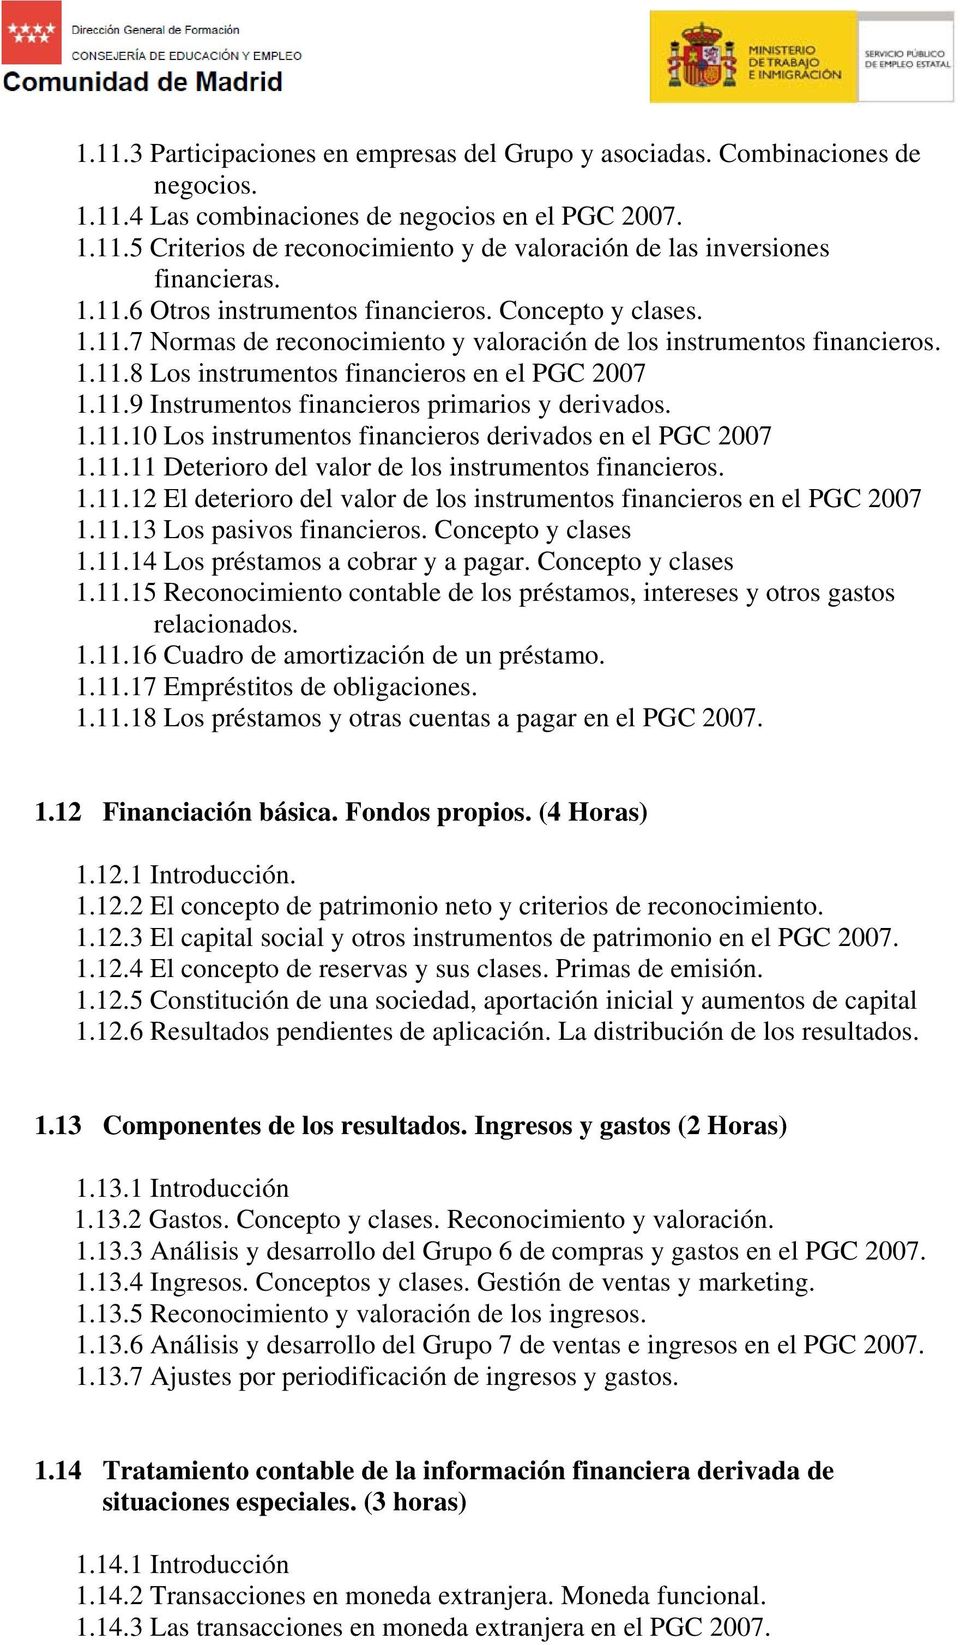 1.11.10 Los instrumentos financieros derivados en el PGC 2007 1.11.11 Deterioro del valor de los instrumentos financieros. 1.11.12 El deterioro del valor de los instrumentos financieros en el PGC 2007 1.